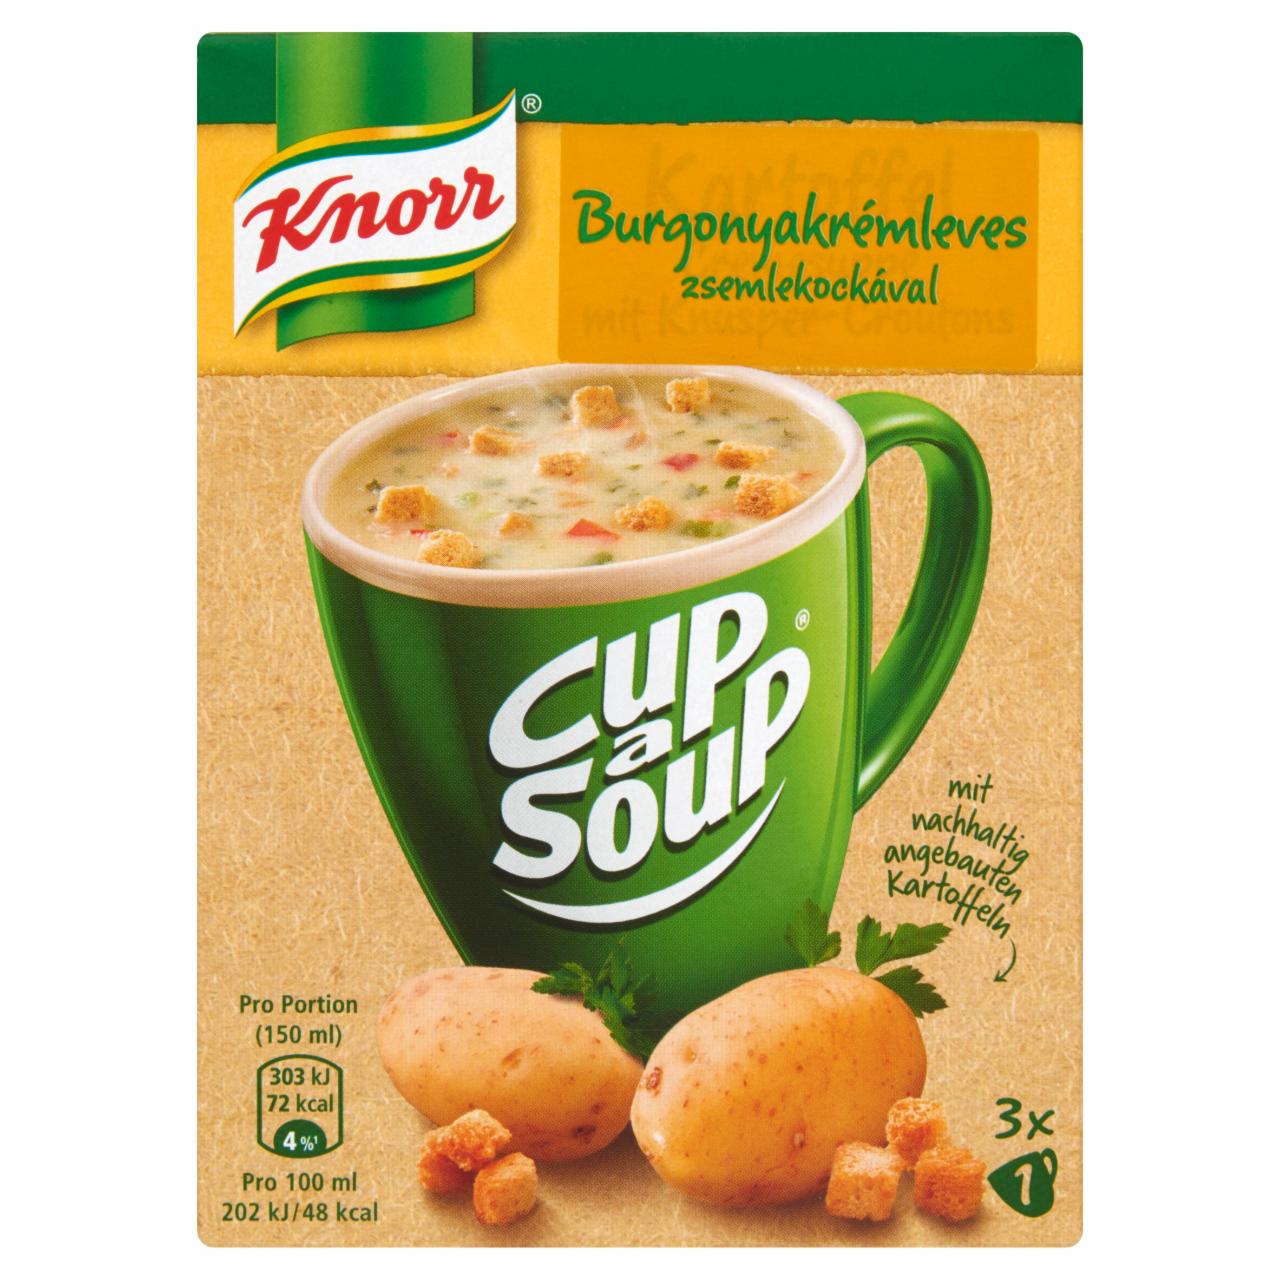 Képek - Knorr Cup a Soup burgonyakrémleves zsemlekockával 3 x 16 g